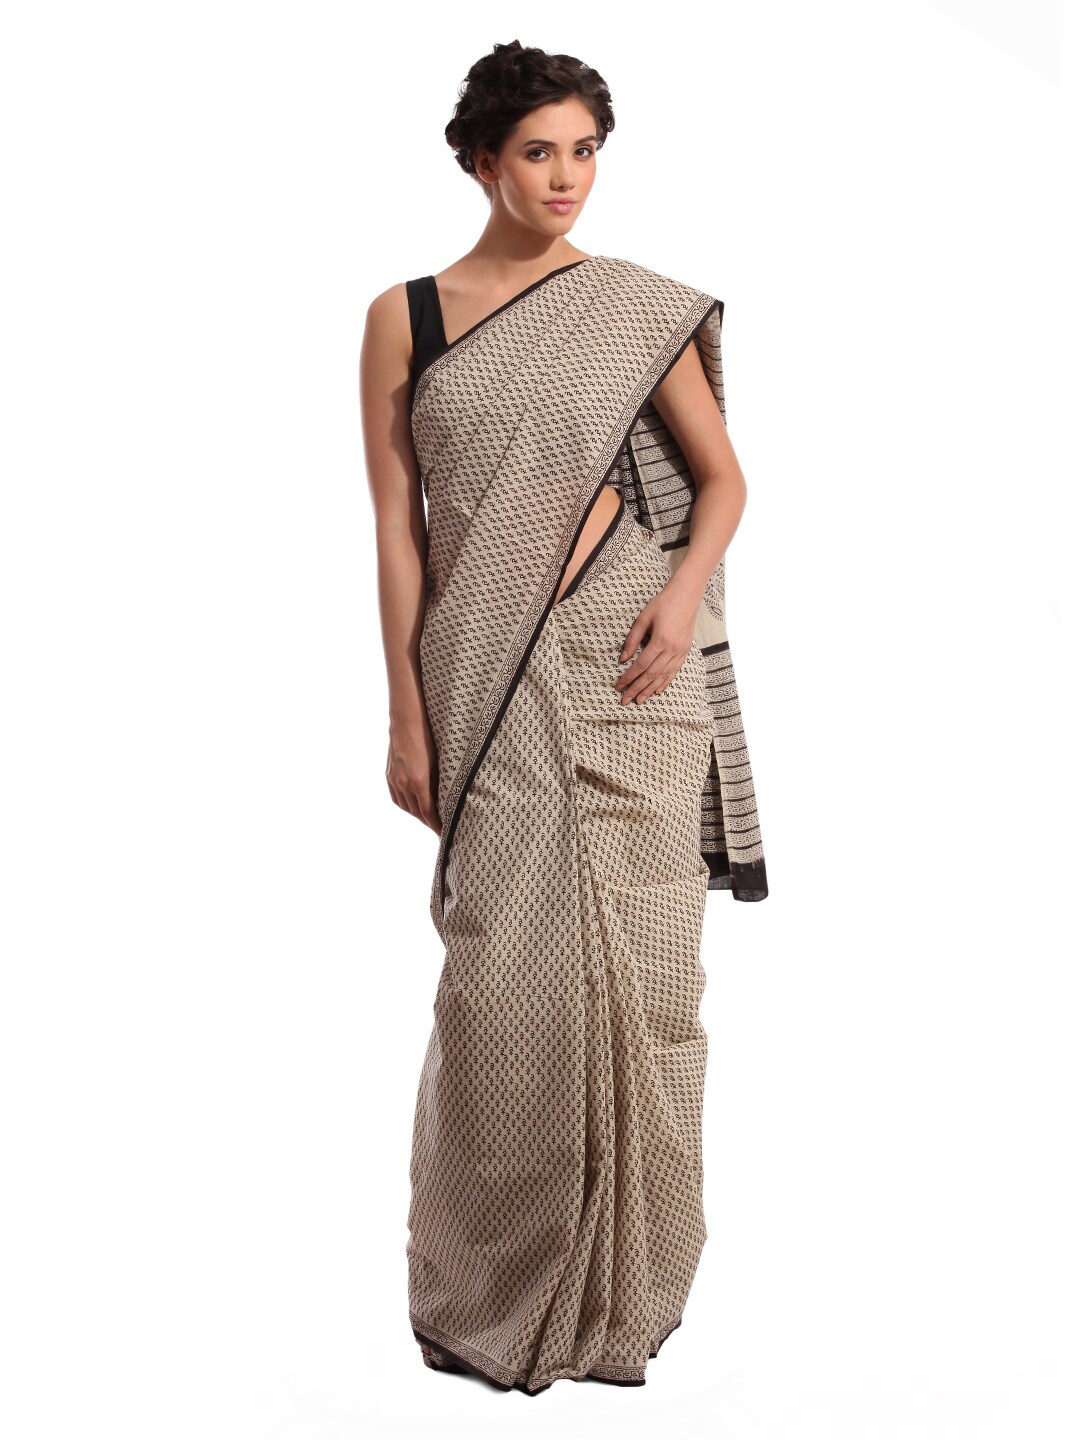 Fabindia Beige Jaipur Print Cotton Sari